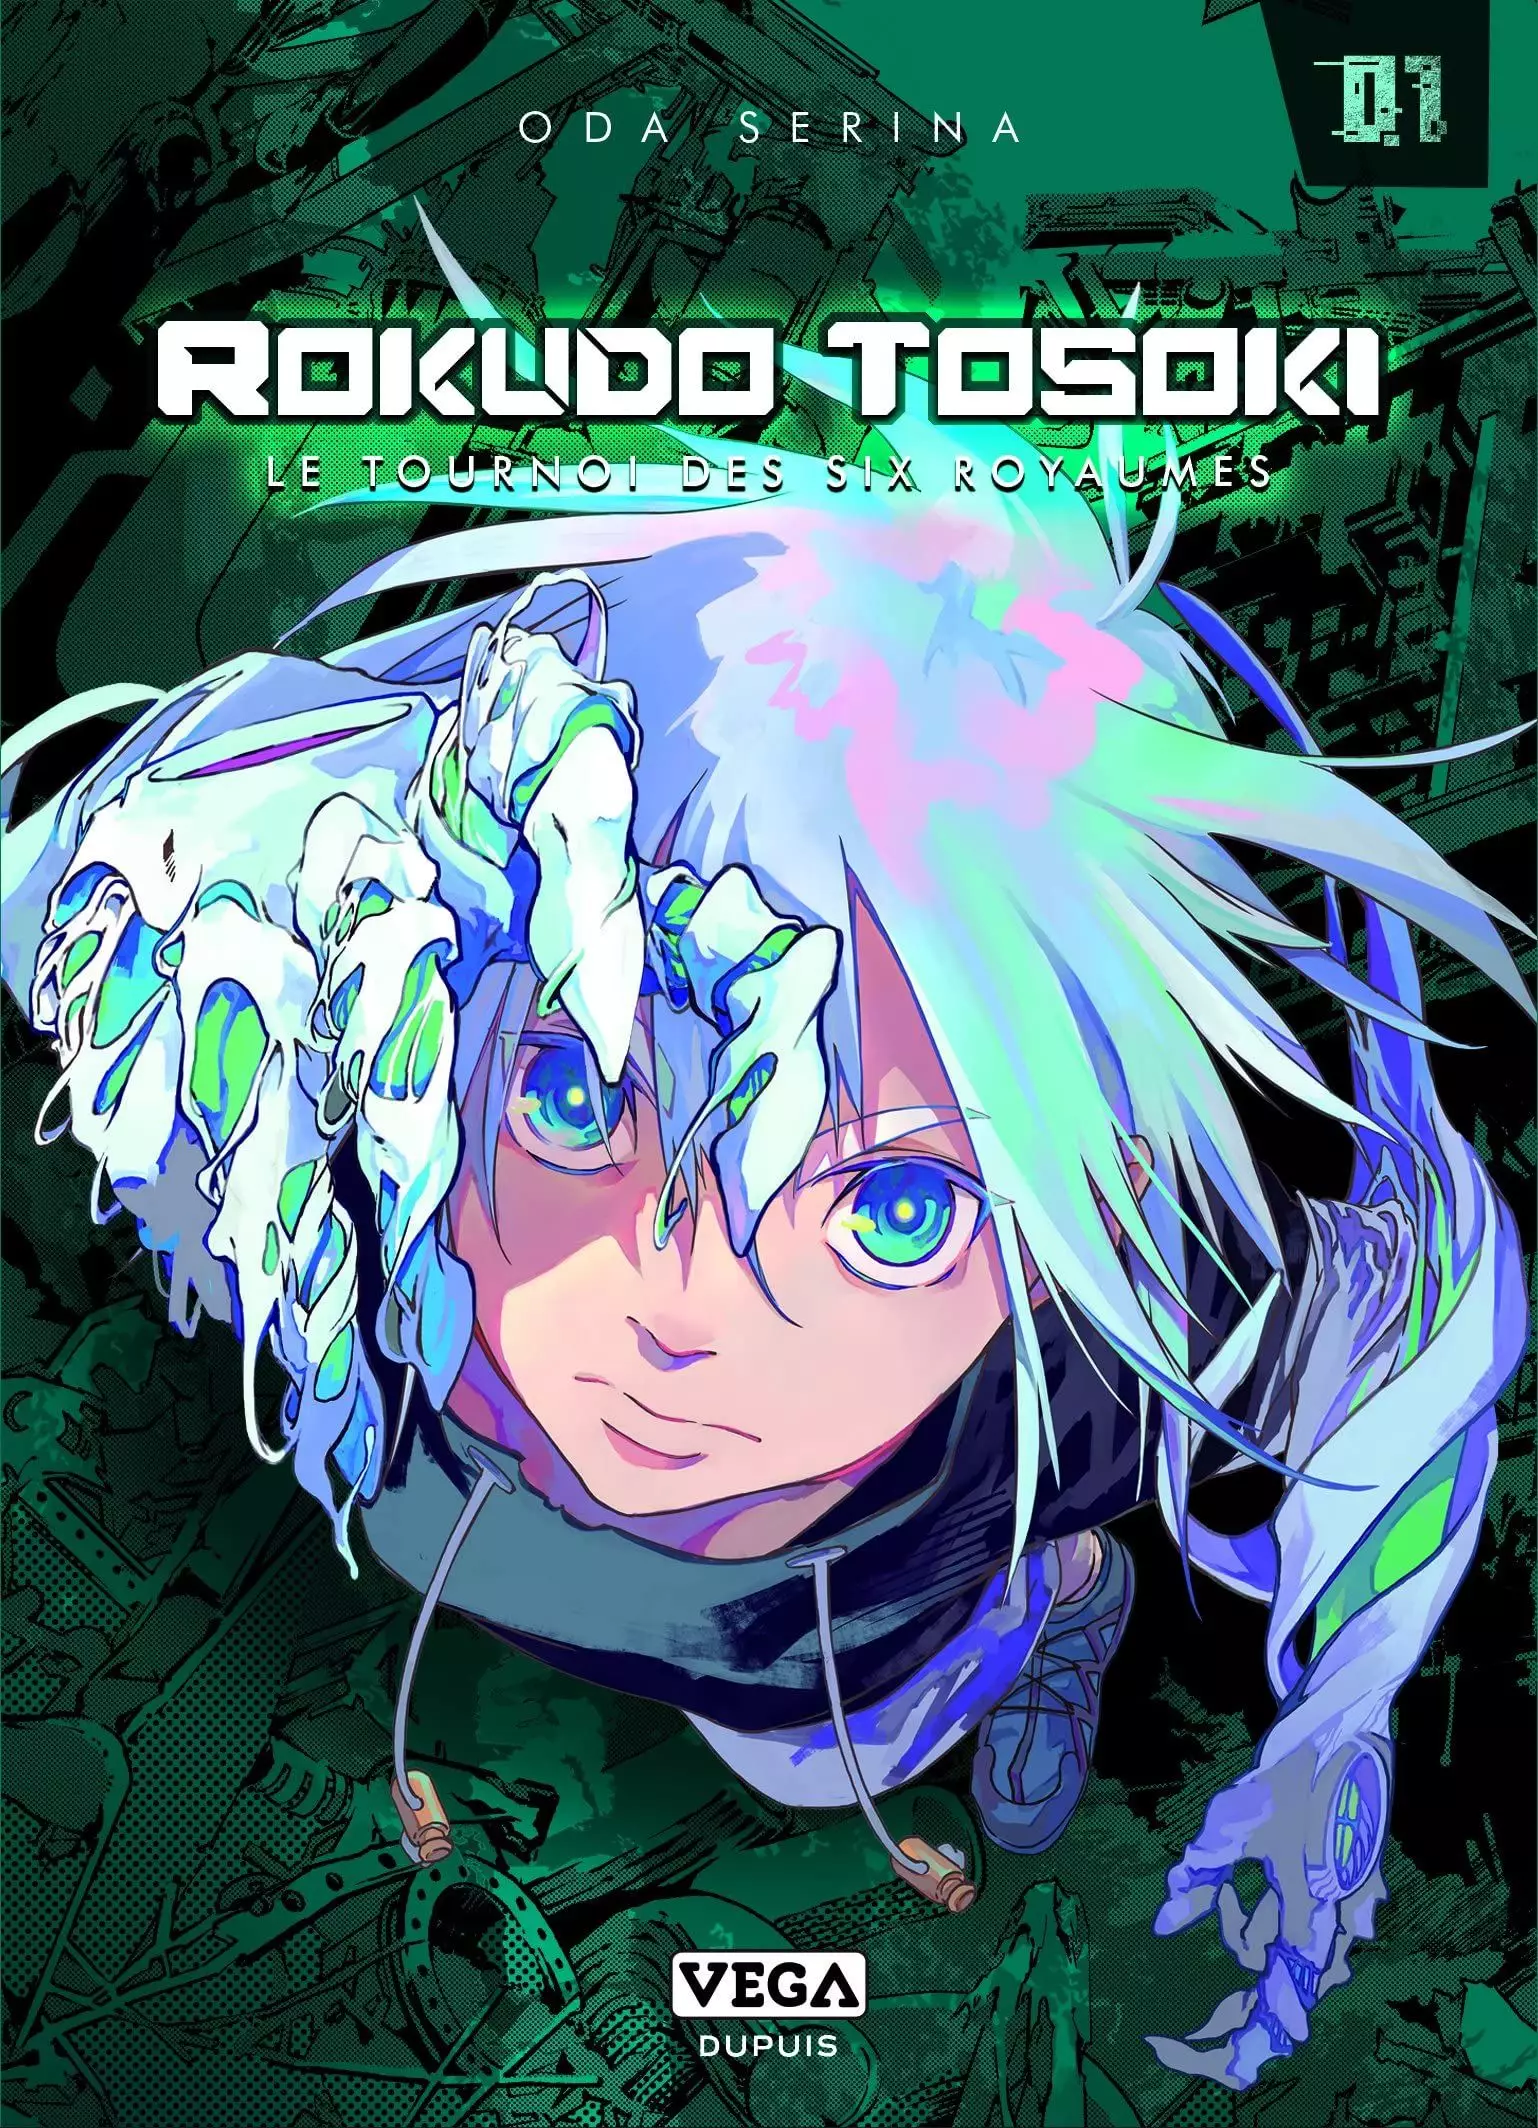 Manga - Rokudo Tosoki le Tournoi des 6 royaumes